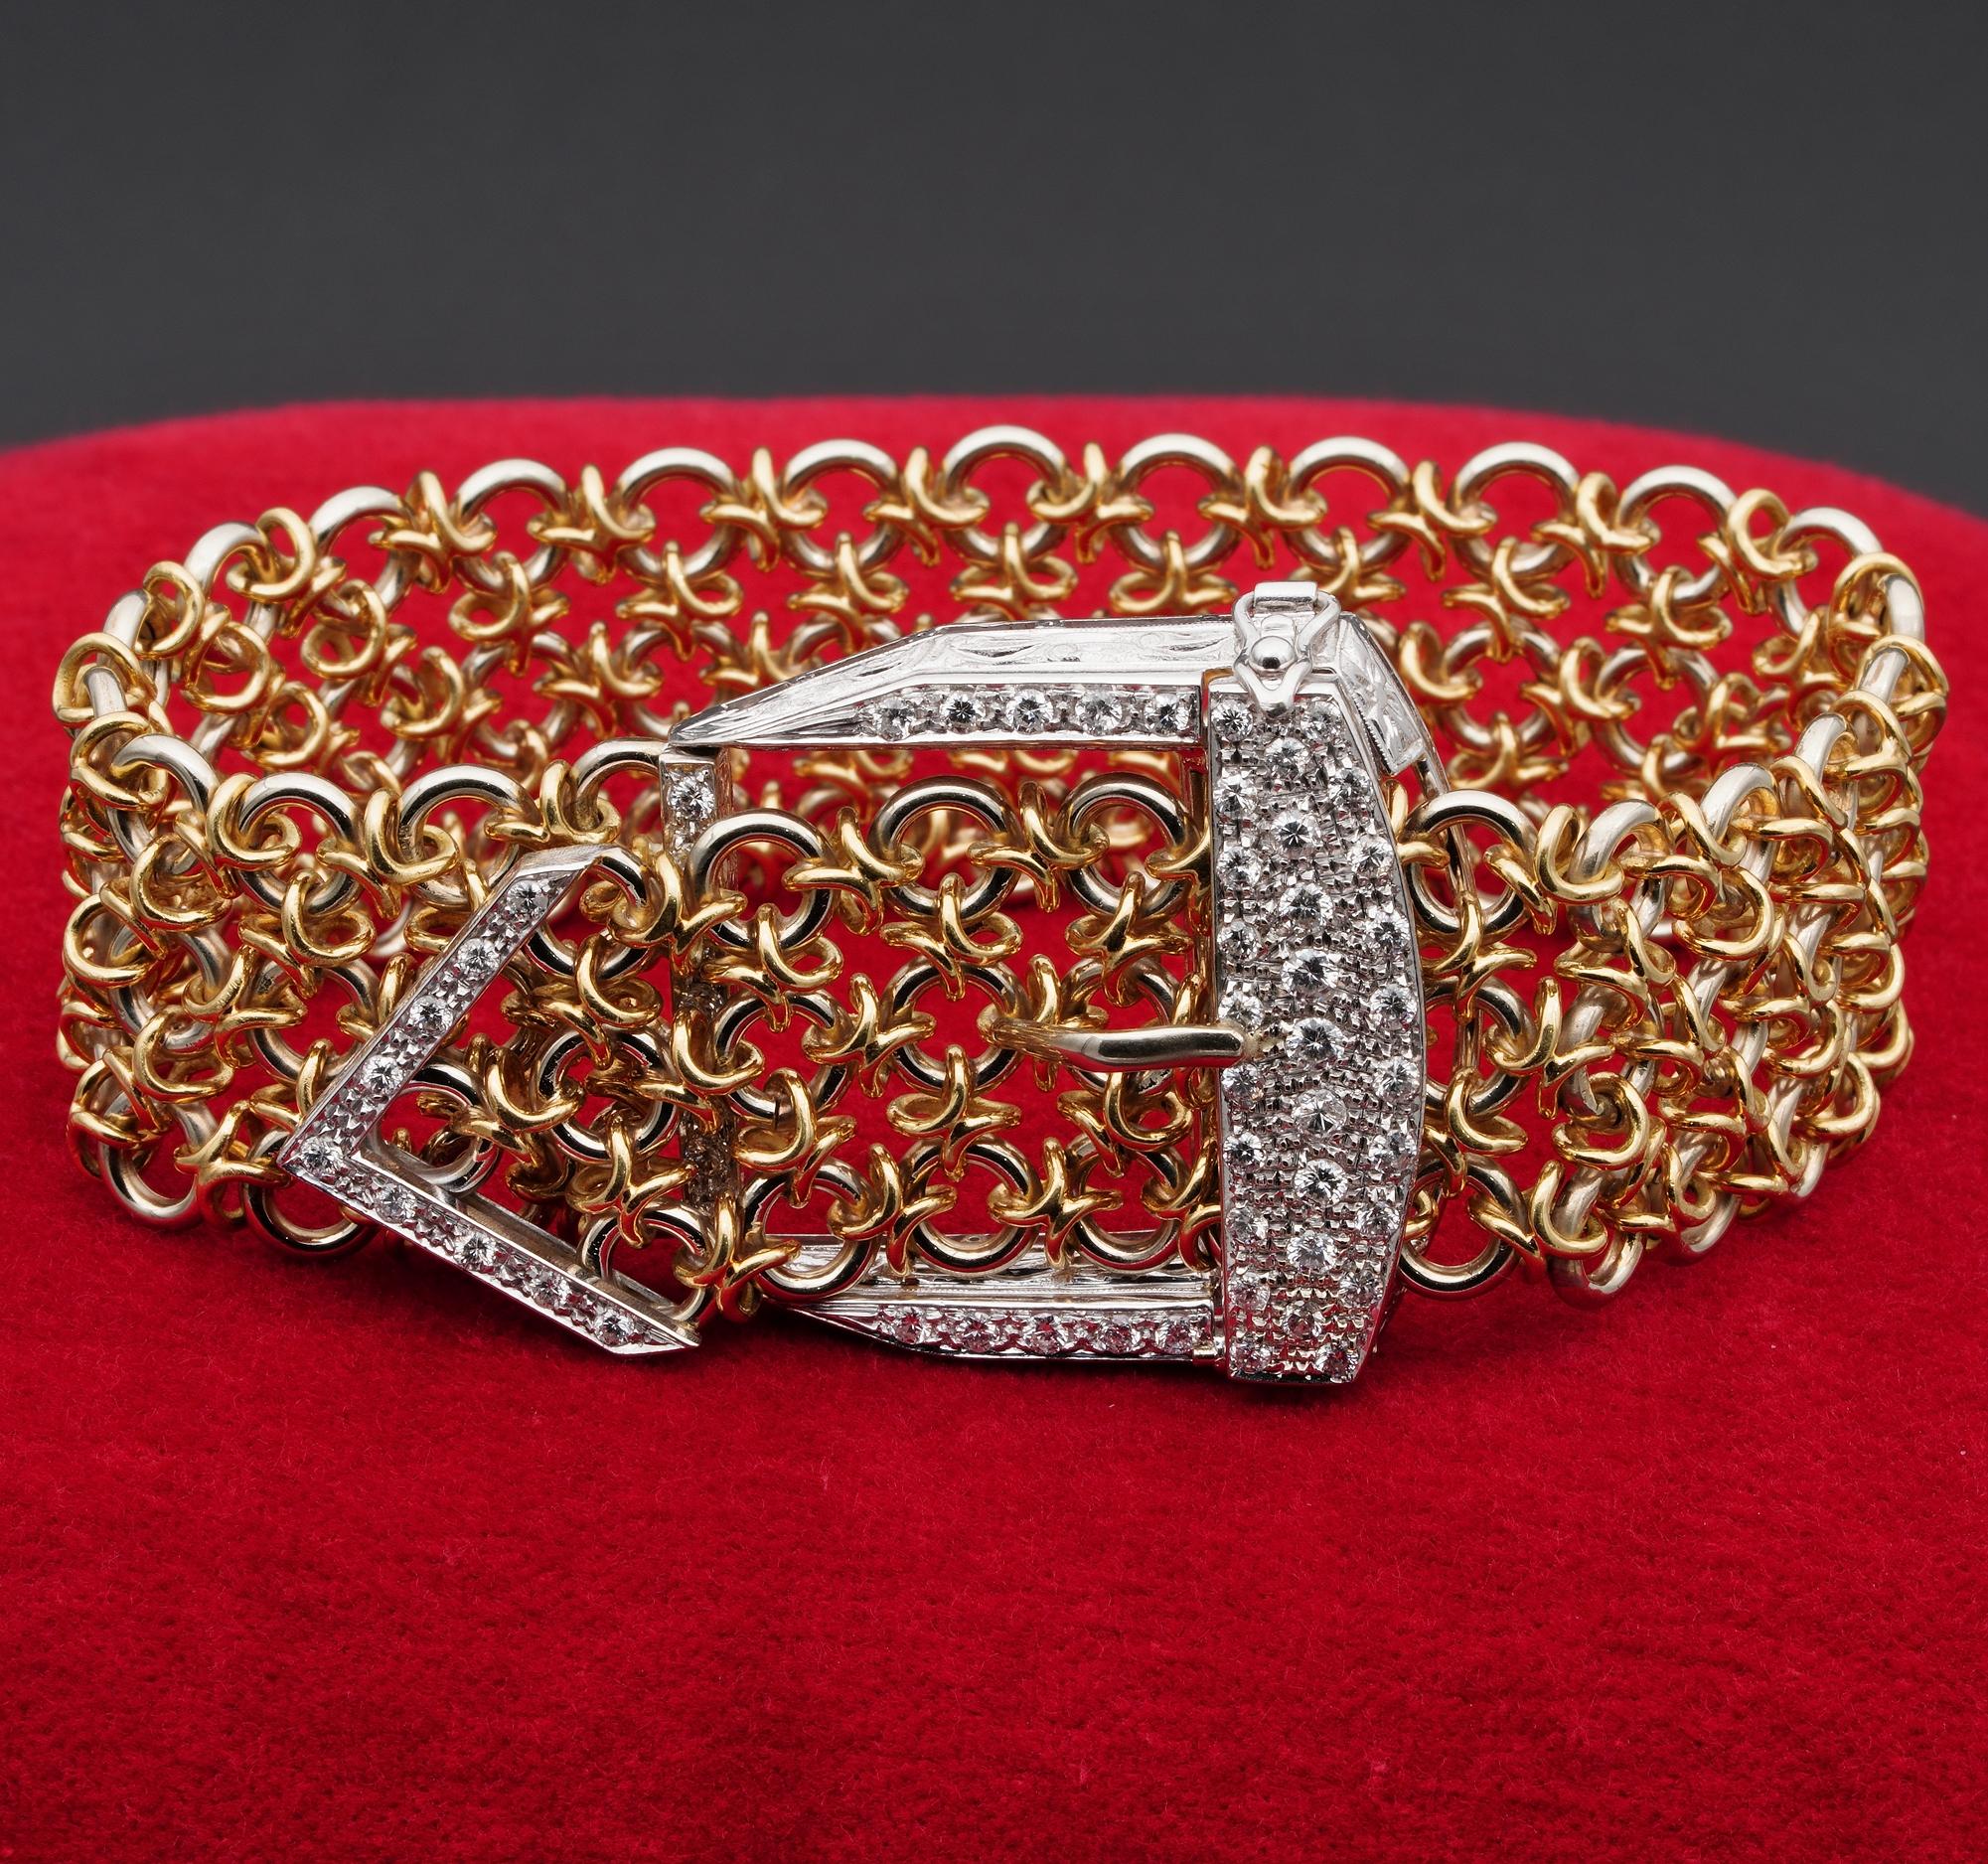 Diese  Außergewöhnlich handgefertigtes italienisches Retro-Armband aus massivem 18-karätigem Gold
Mit einem ganz besonderen handgefertigten, wie gestrickt wirkenden Golddraht, der 55,6 Gramm wiegt - ergänzt durch eine geometrisch schön gestaltete